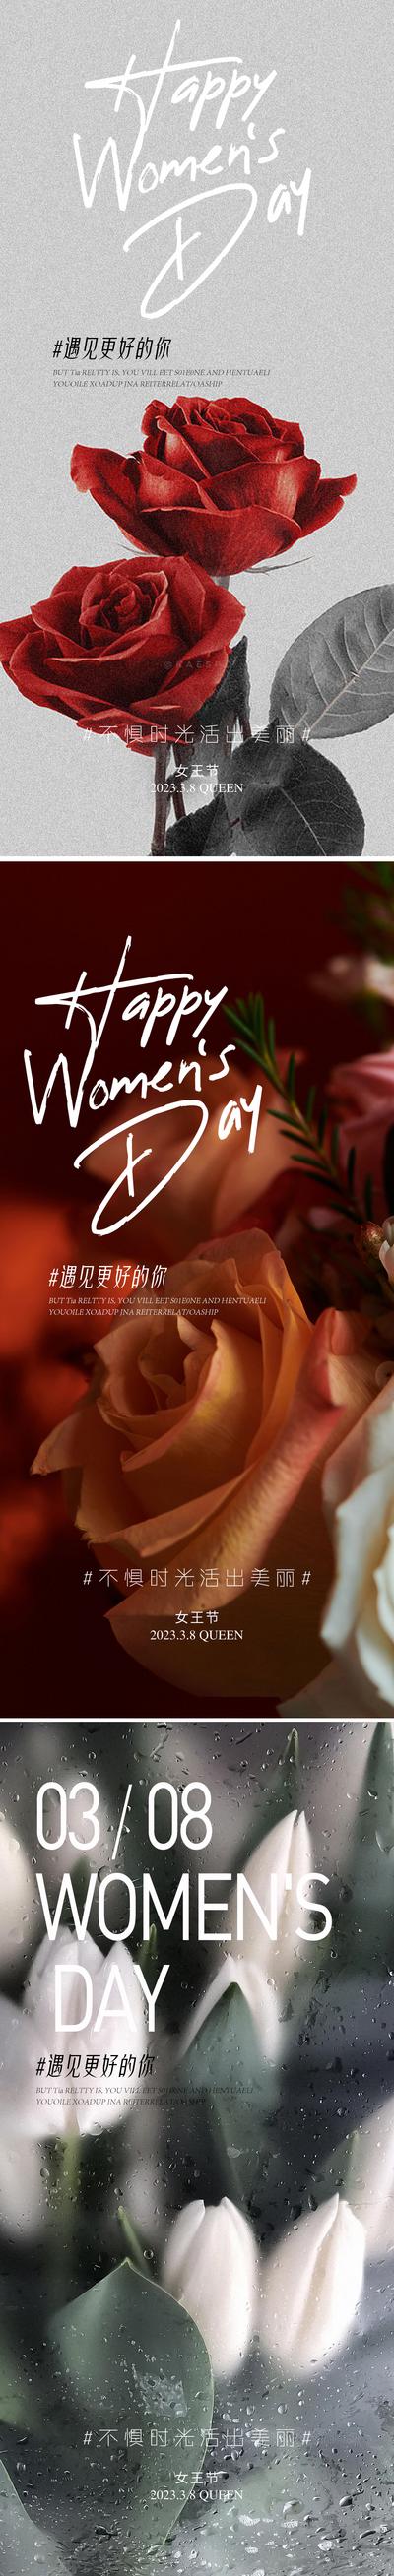 南门网 广告 海报 节日 妇女节 38 鲜花 浪漫 系列